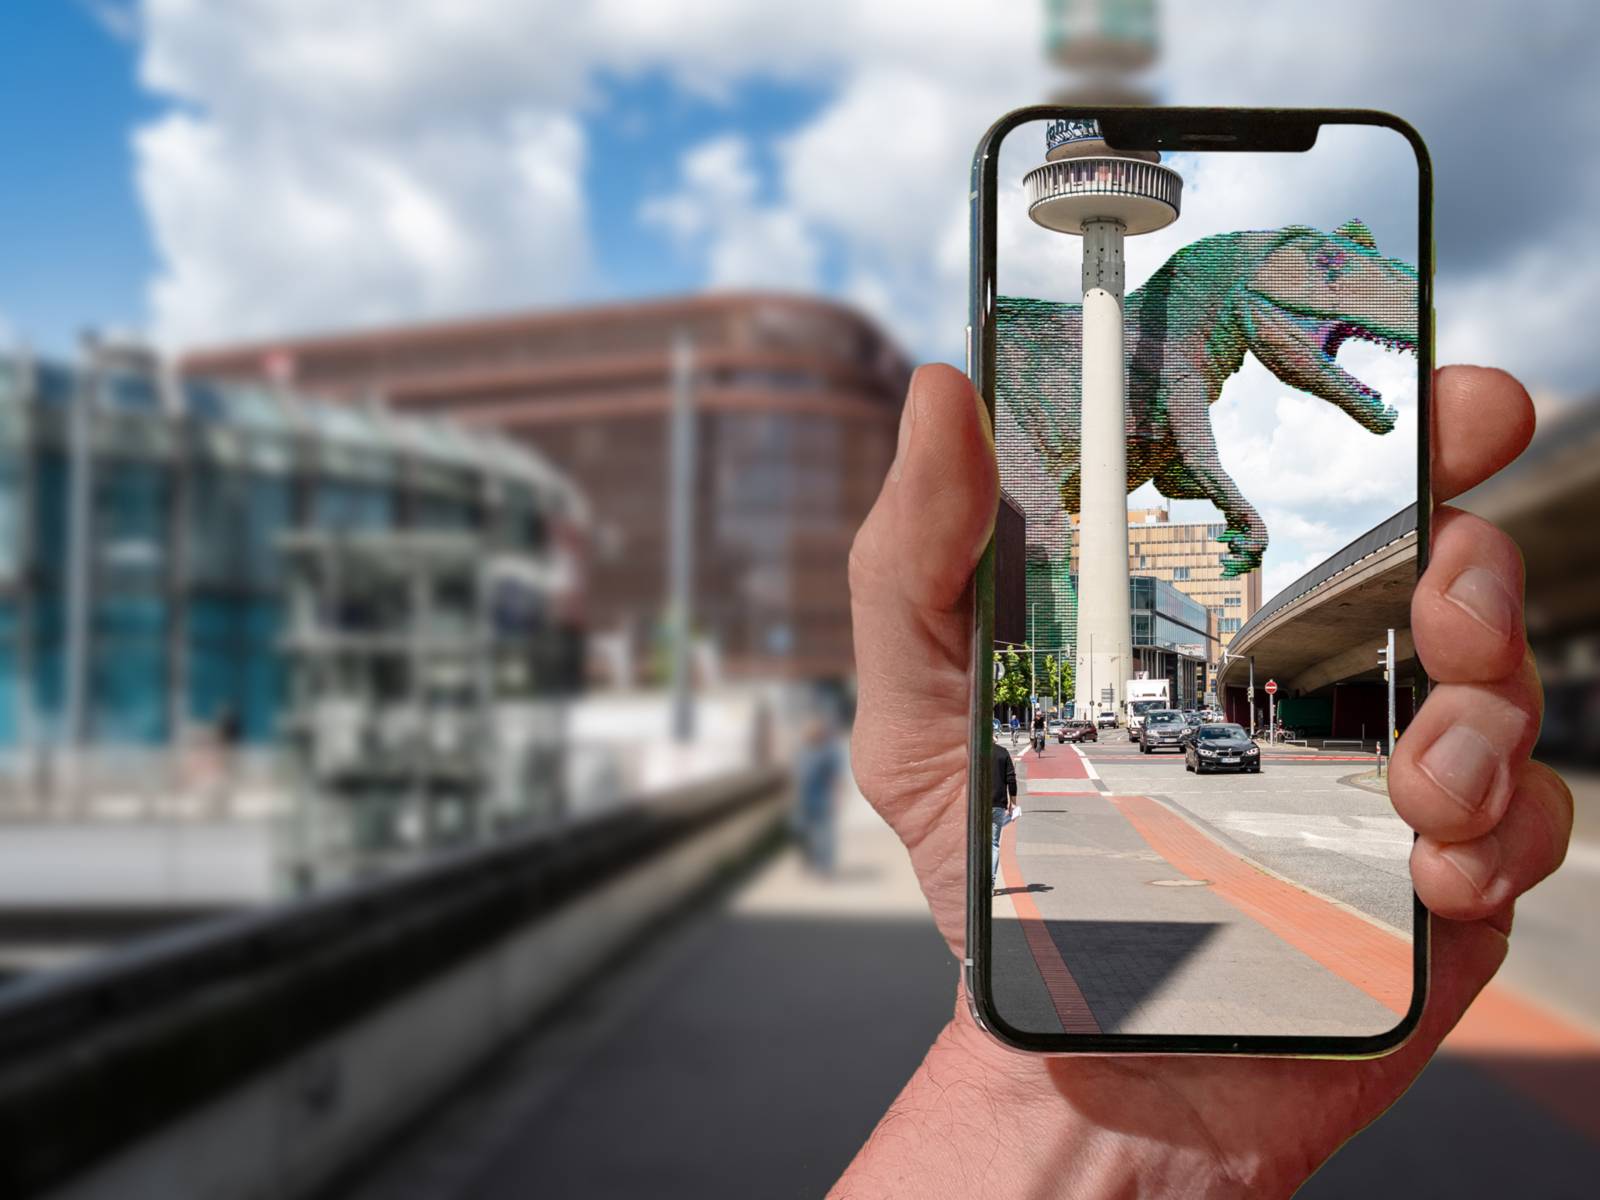 Eine Straße in Hannover. Davor hält eine Hand ein Handy. Über den Monitor wird ein Dino in die Straße eingeblendet.